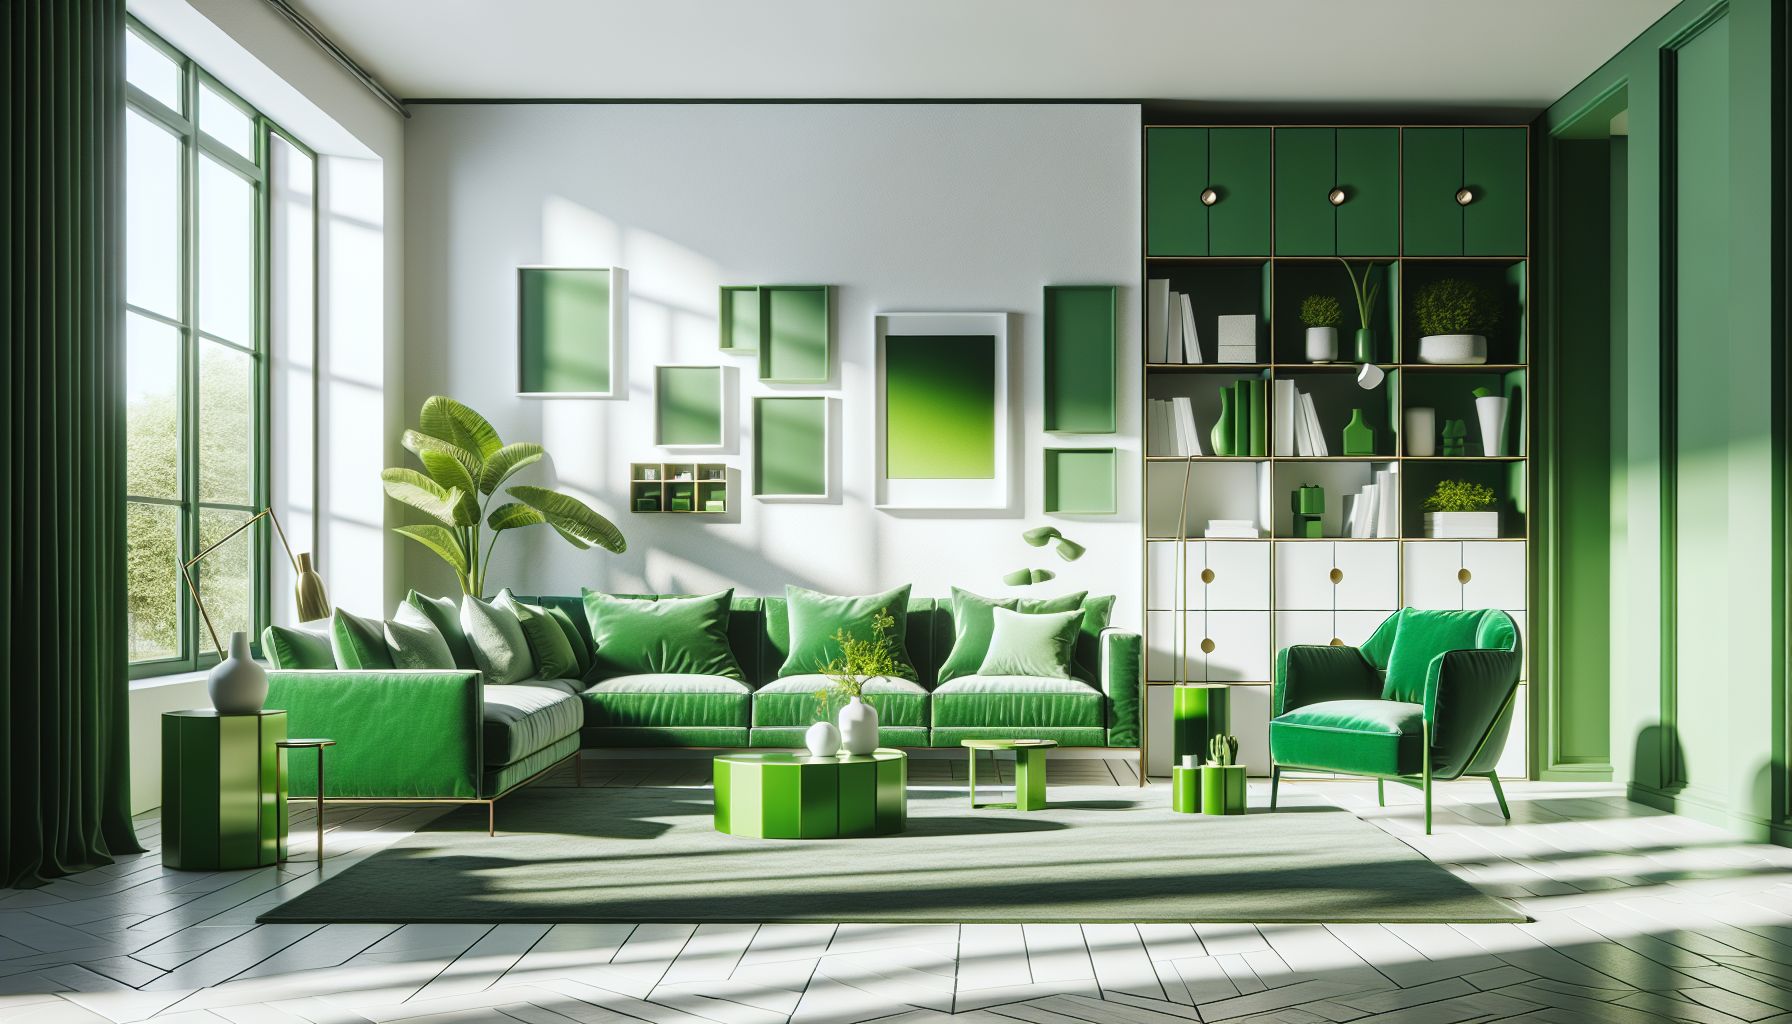 Wohnzimmer in Grün: Ideen und Inspiration- Stelle grüne Möbelstücke als Hingucker auf